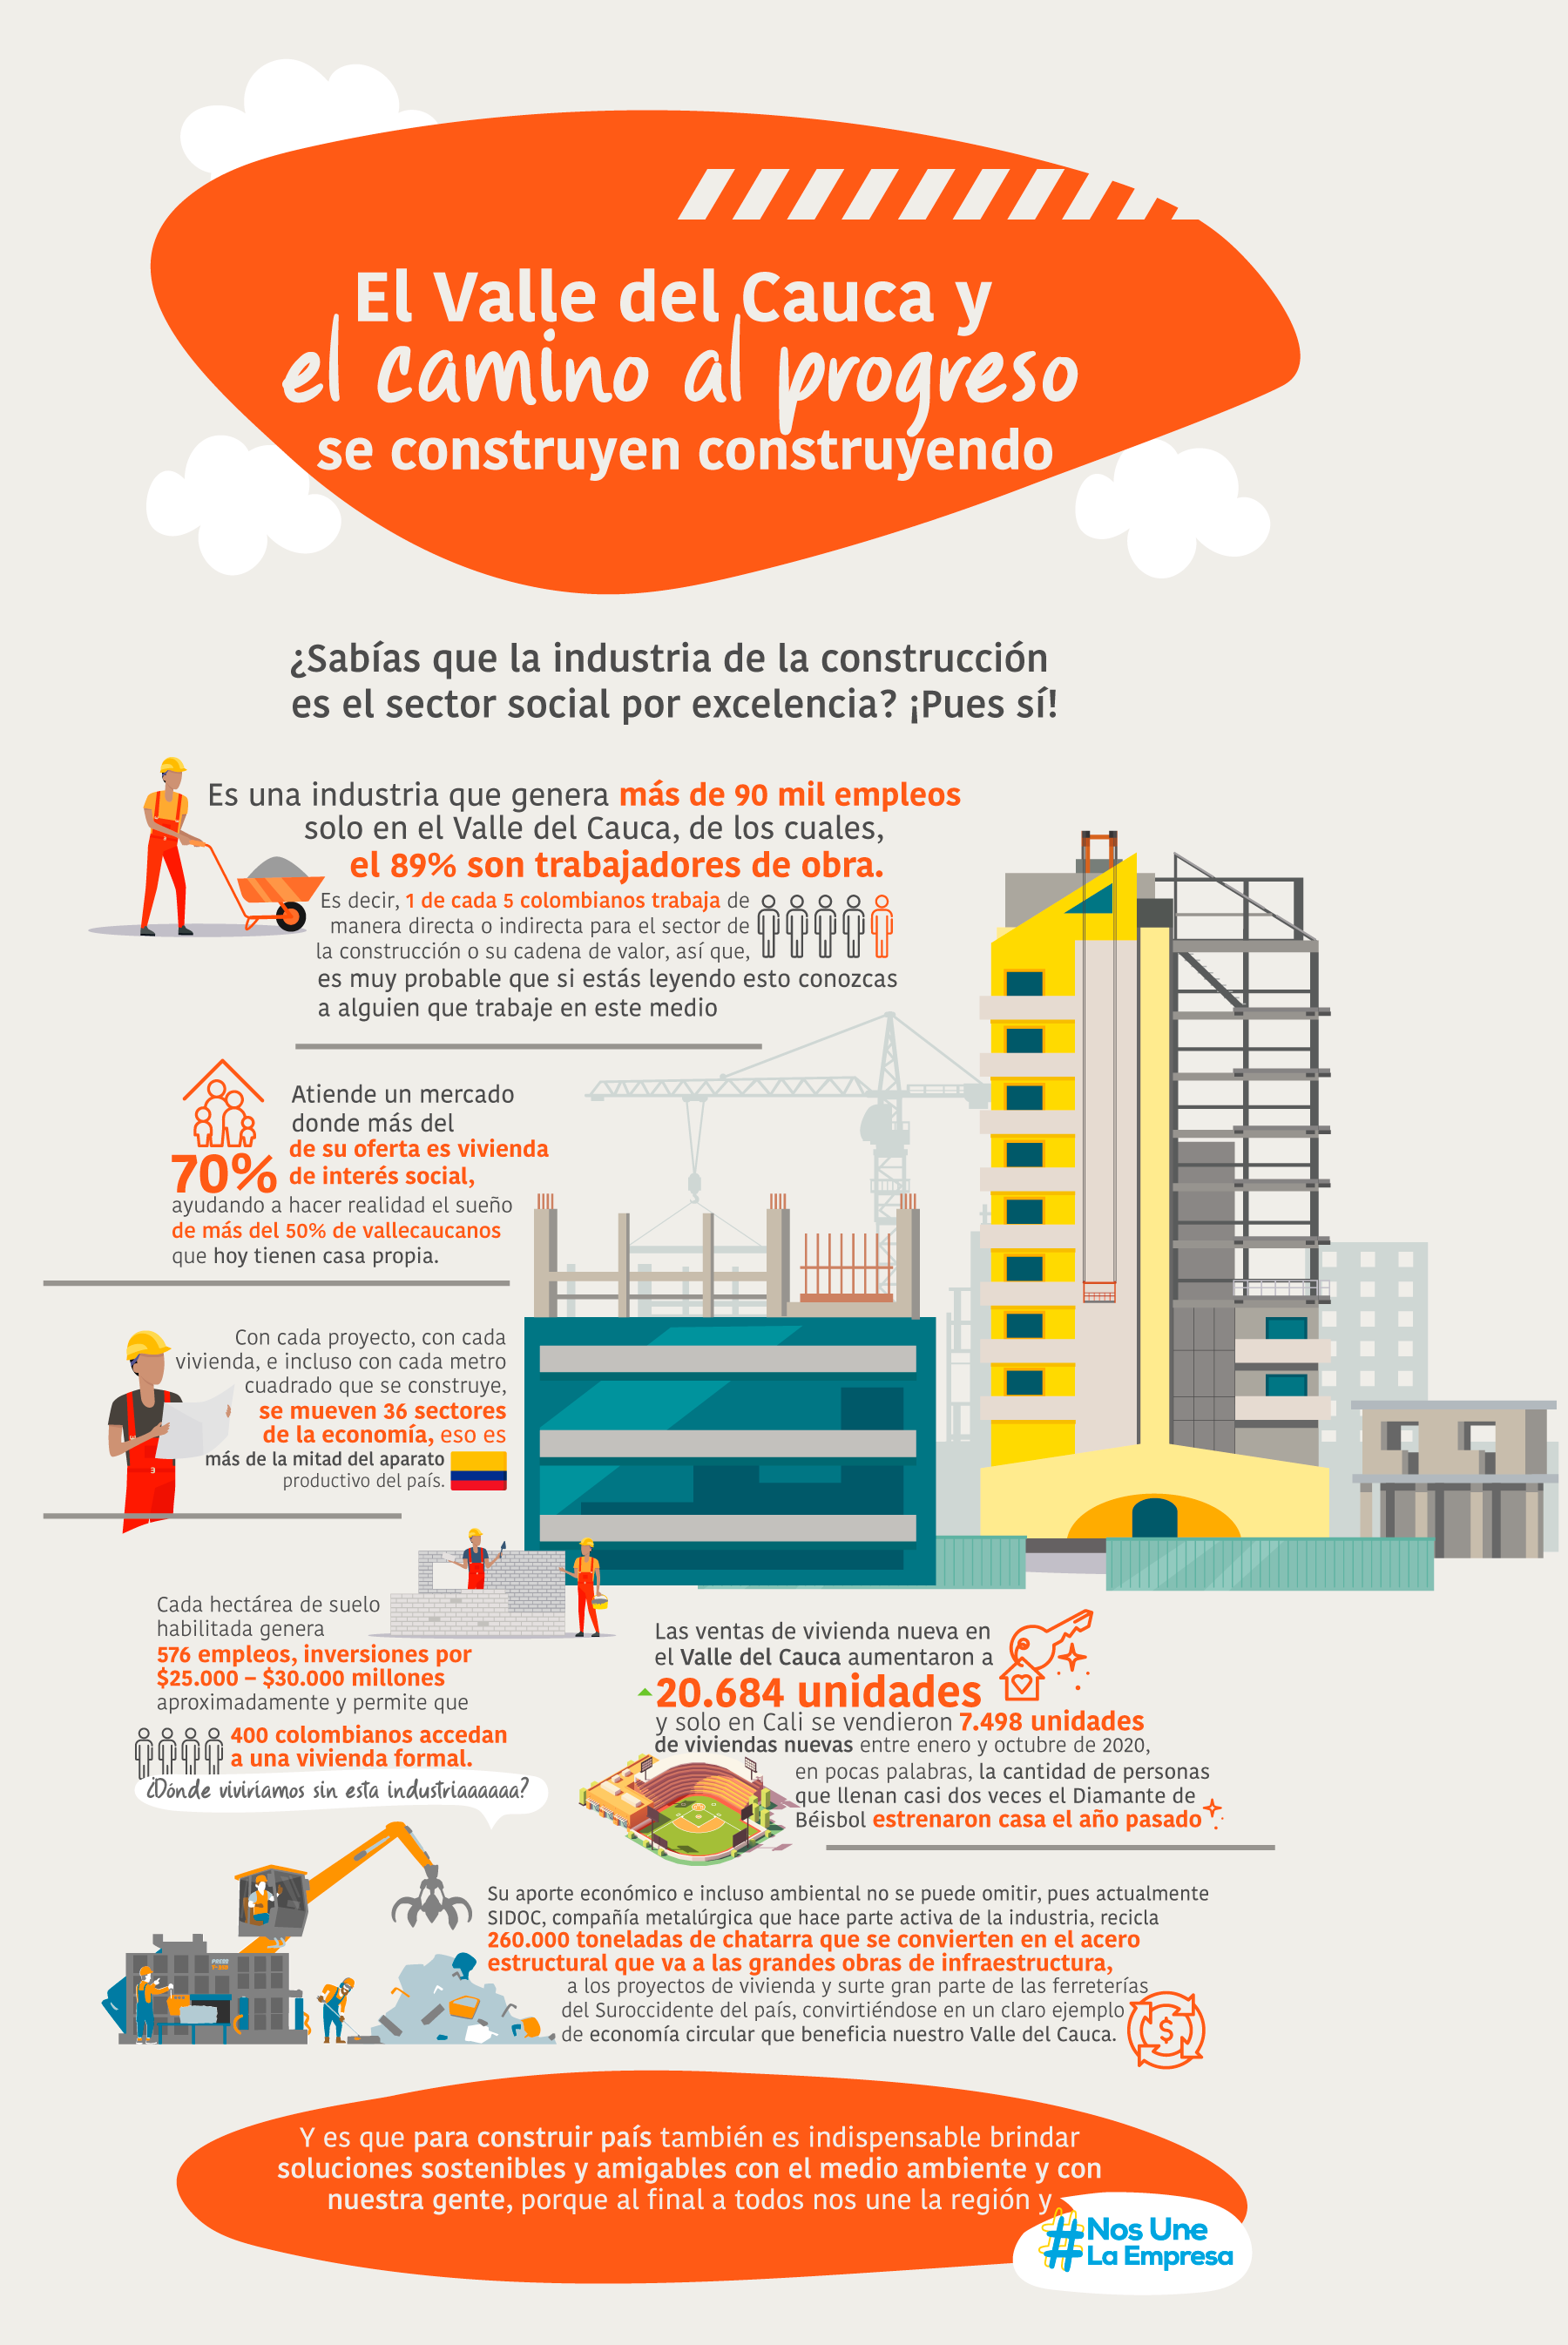 De la mano de las empresas que crean lazos poderosos en nuestra región #NosUneLaEmpresa El País Qhubo Cali 2021